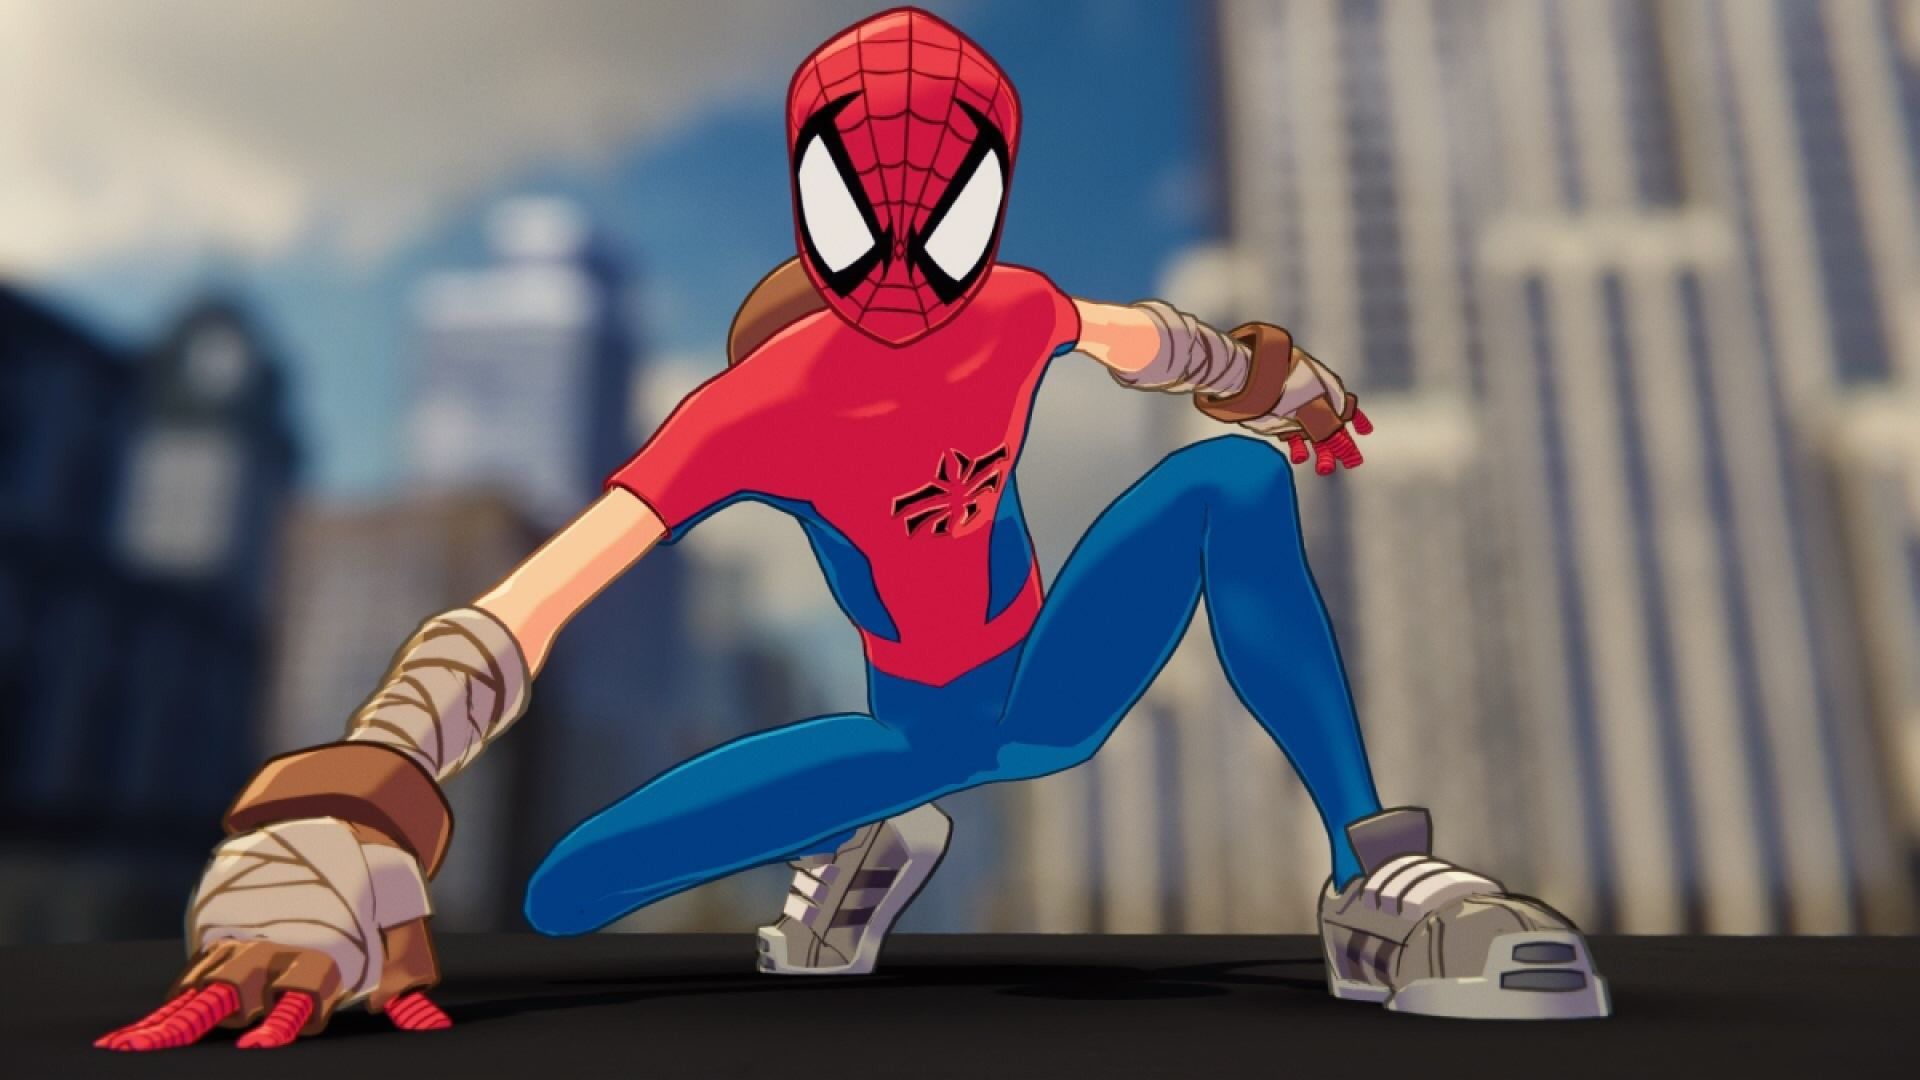 Mangaverse Spider-Man in Marvel's Spider video game